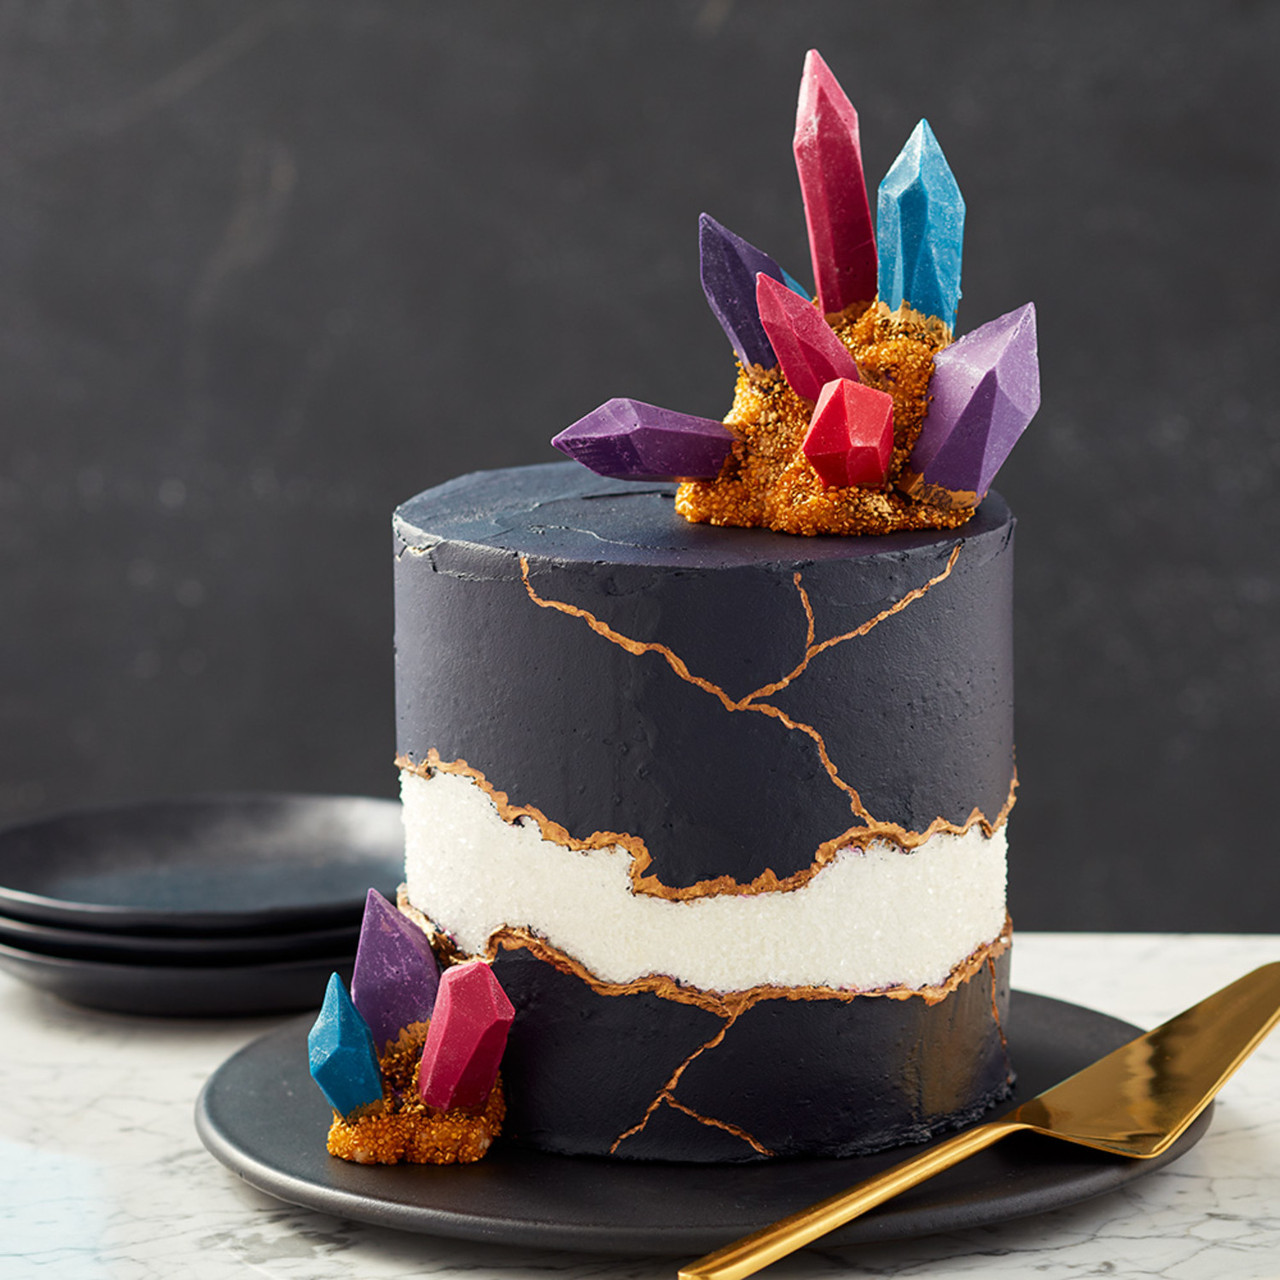 11 Fault Line Cakes ideas | savoury cake, cake decorating, cake